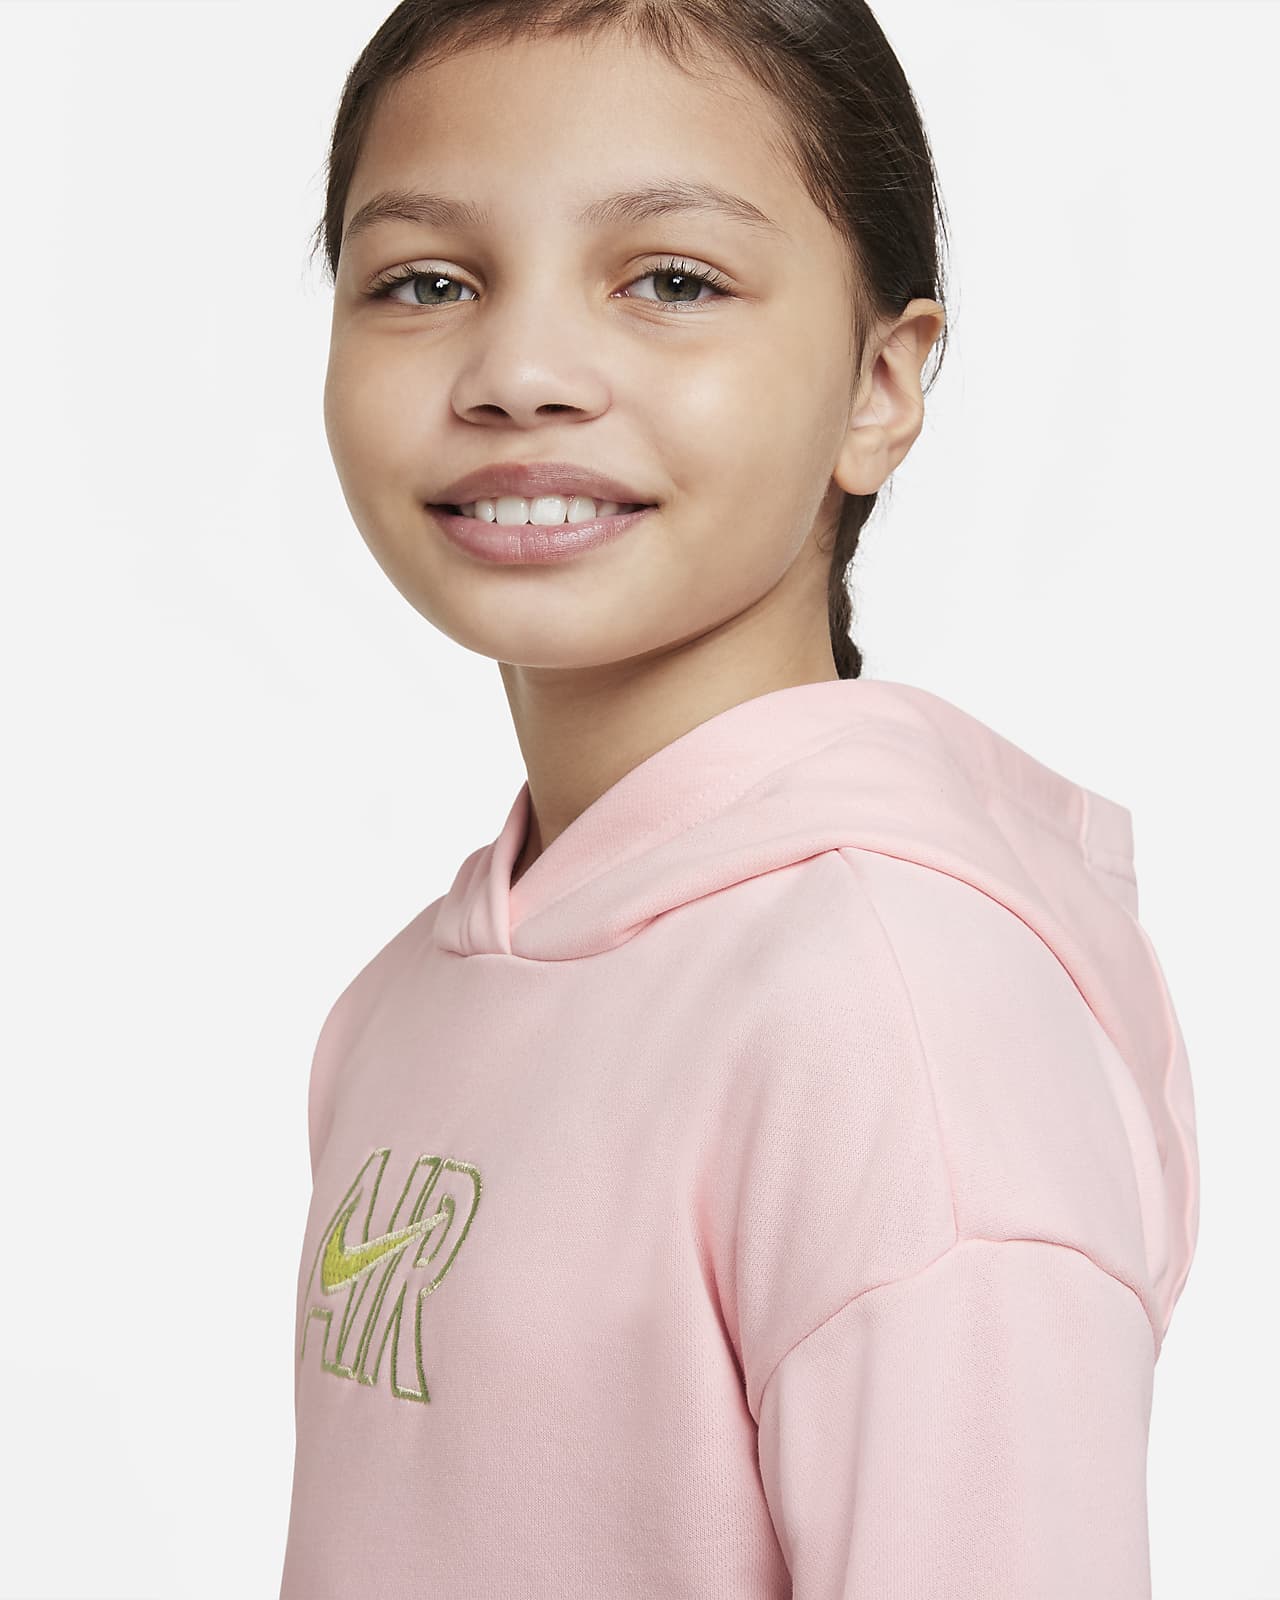 gemeenschap Bedelen Eerlijk Nike Air Korte hoodie van sweatstof voor meisjes. Nike BE